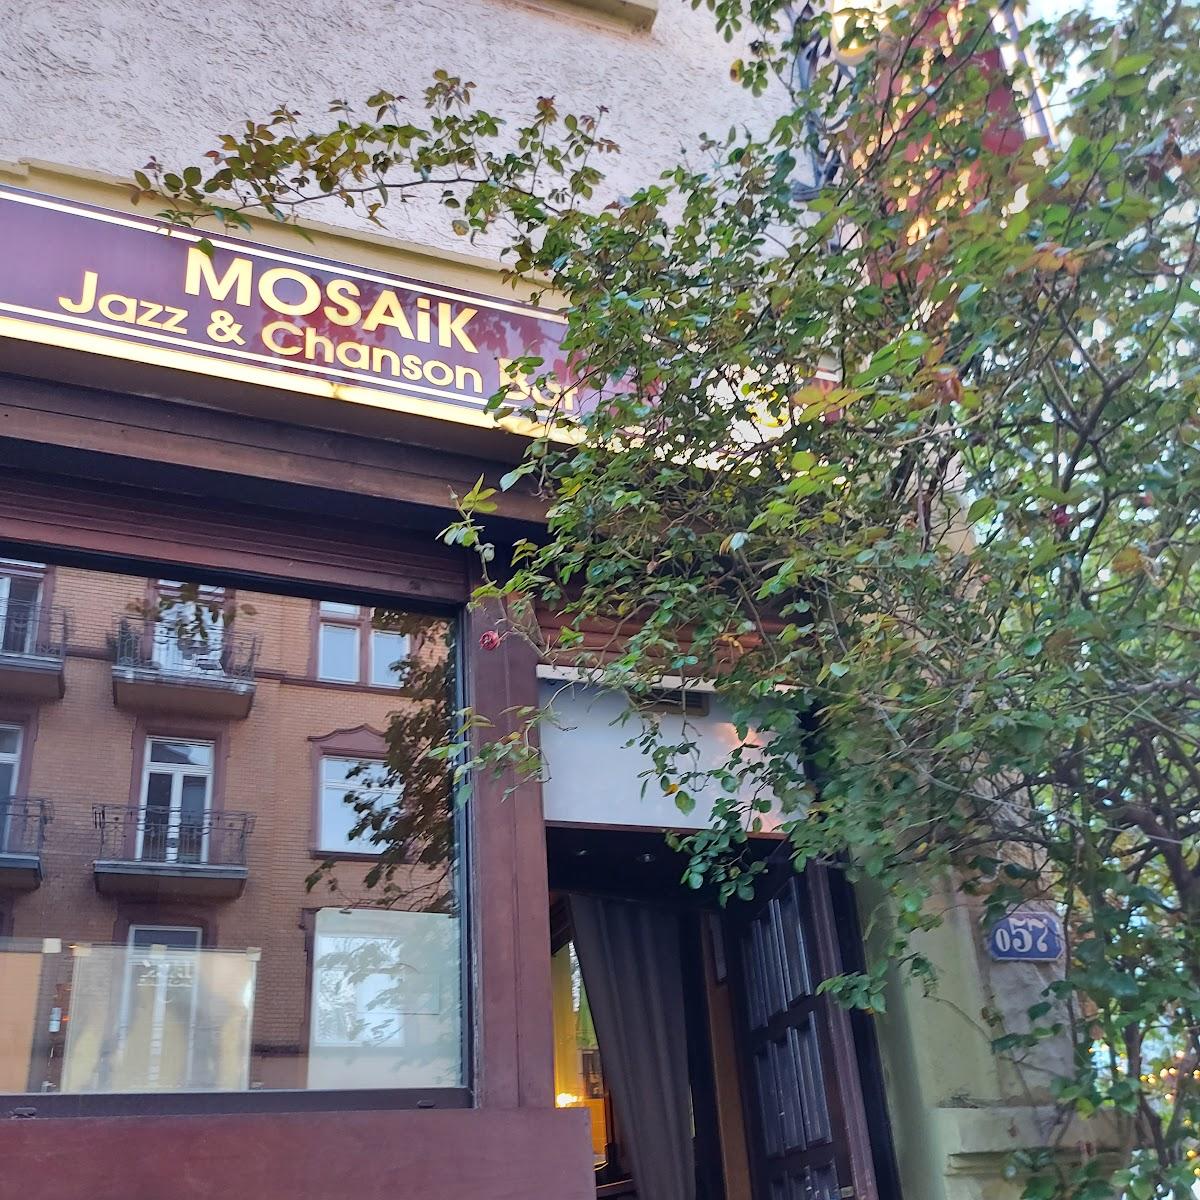 Restaurant "Mosaik Jazz Bar Frankfurt am Main" in Frankfurt am Main